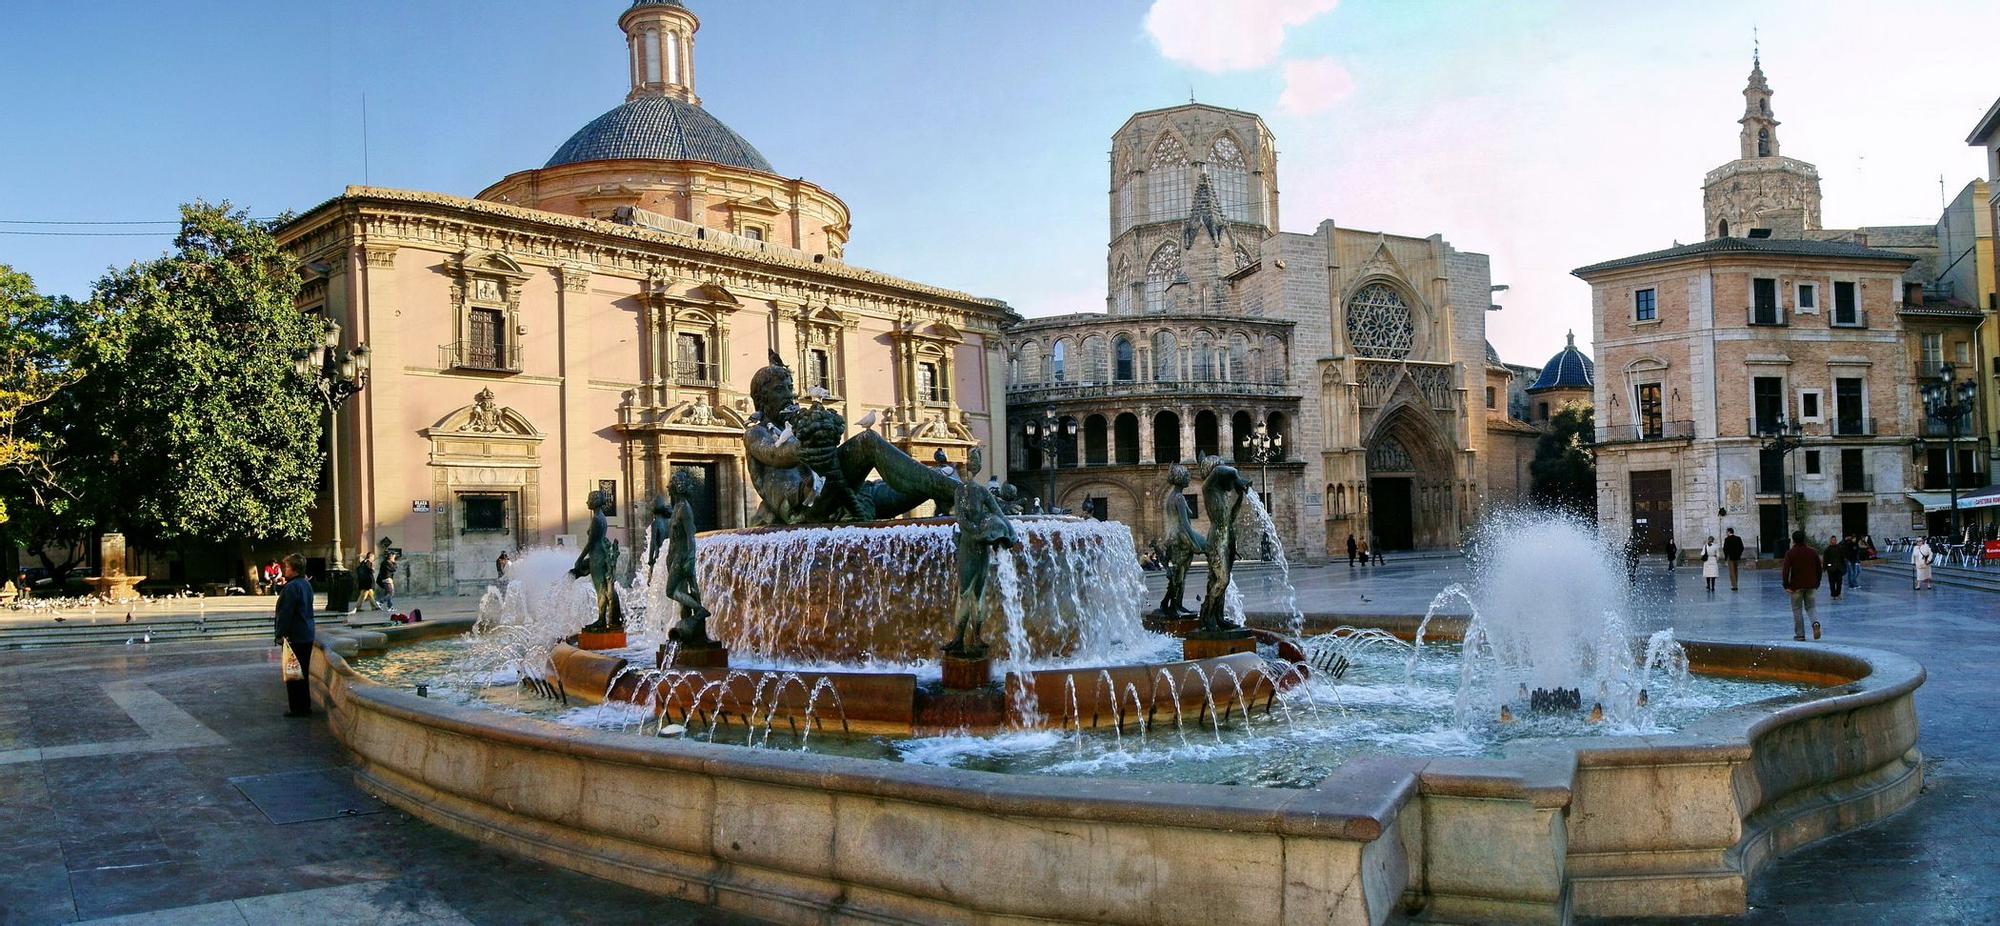 La fuente de la Plaza de la Virgen de València.